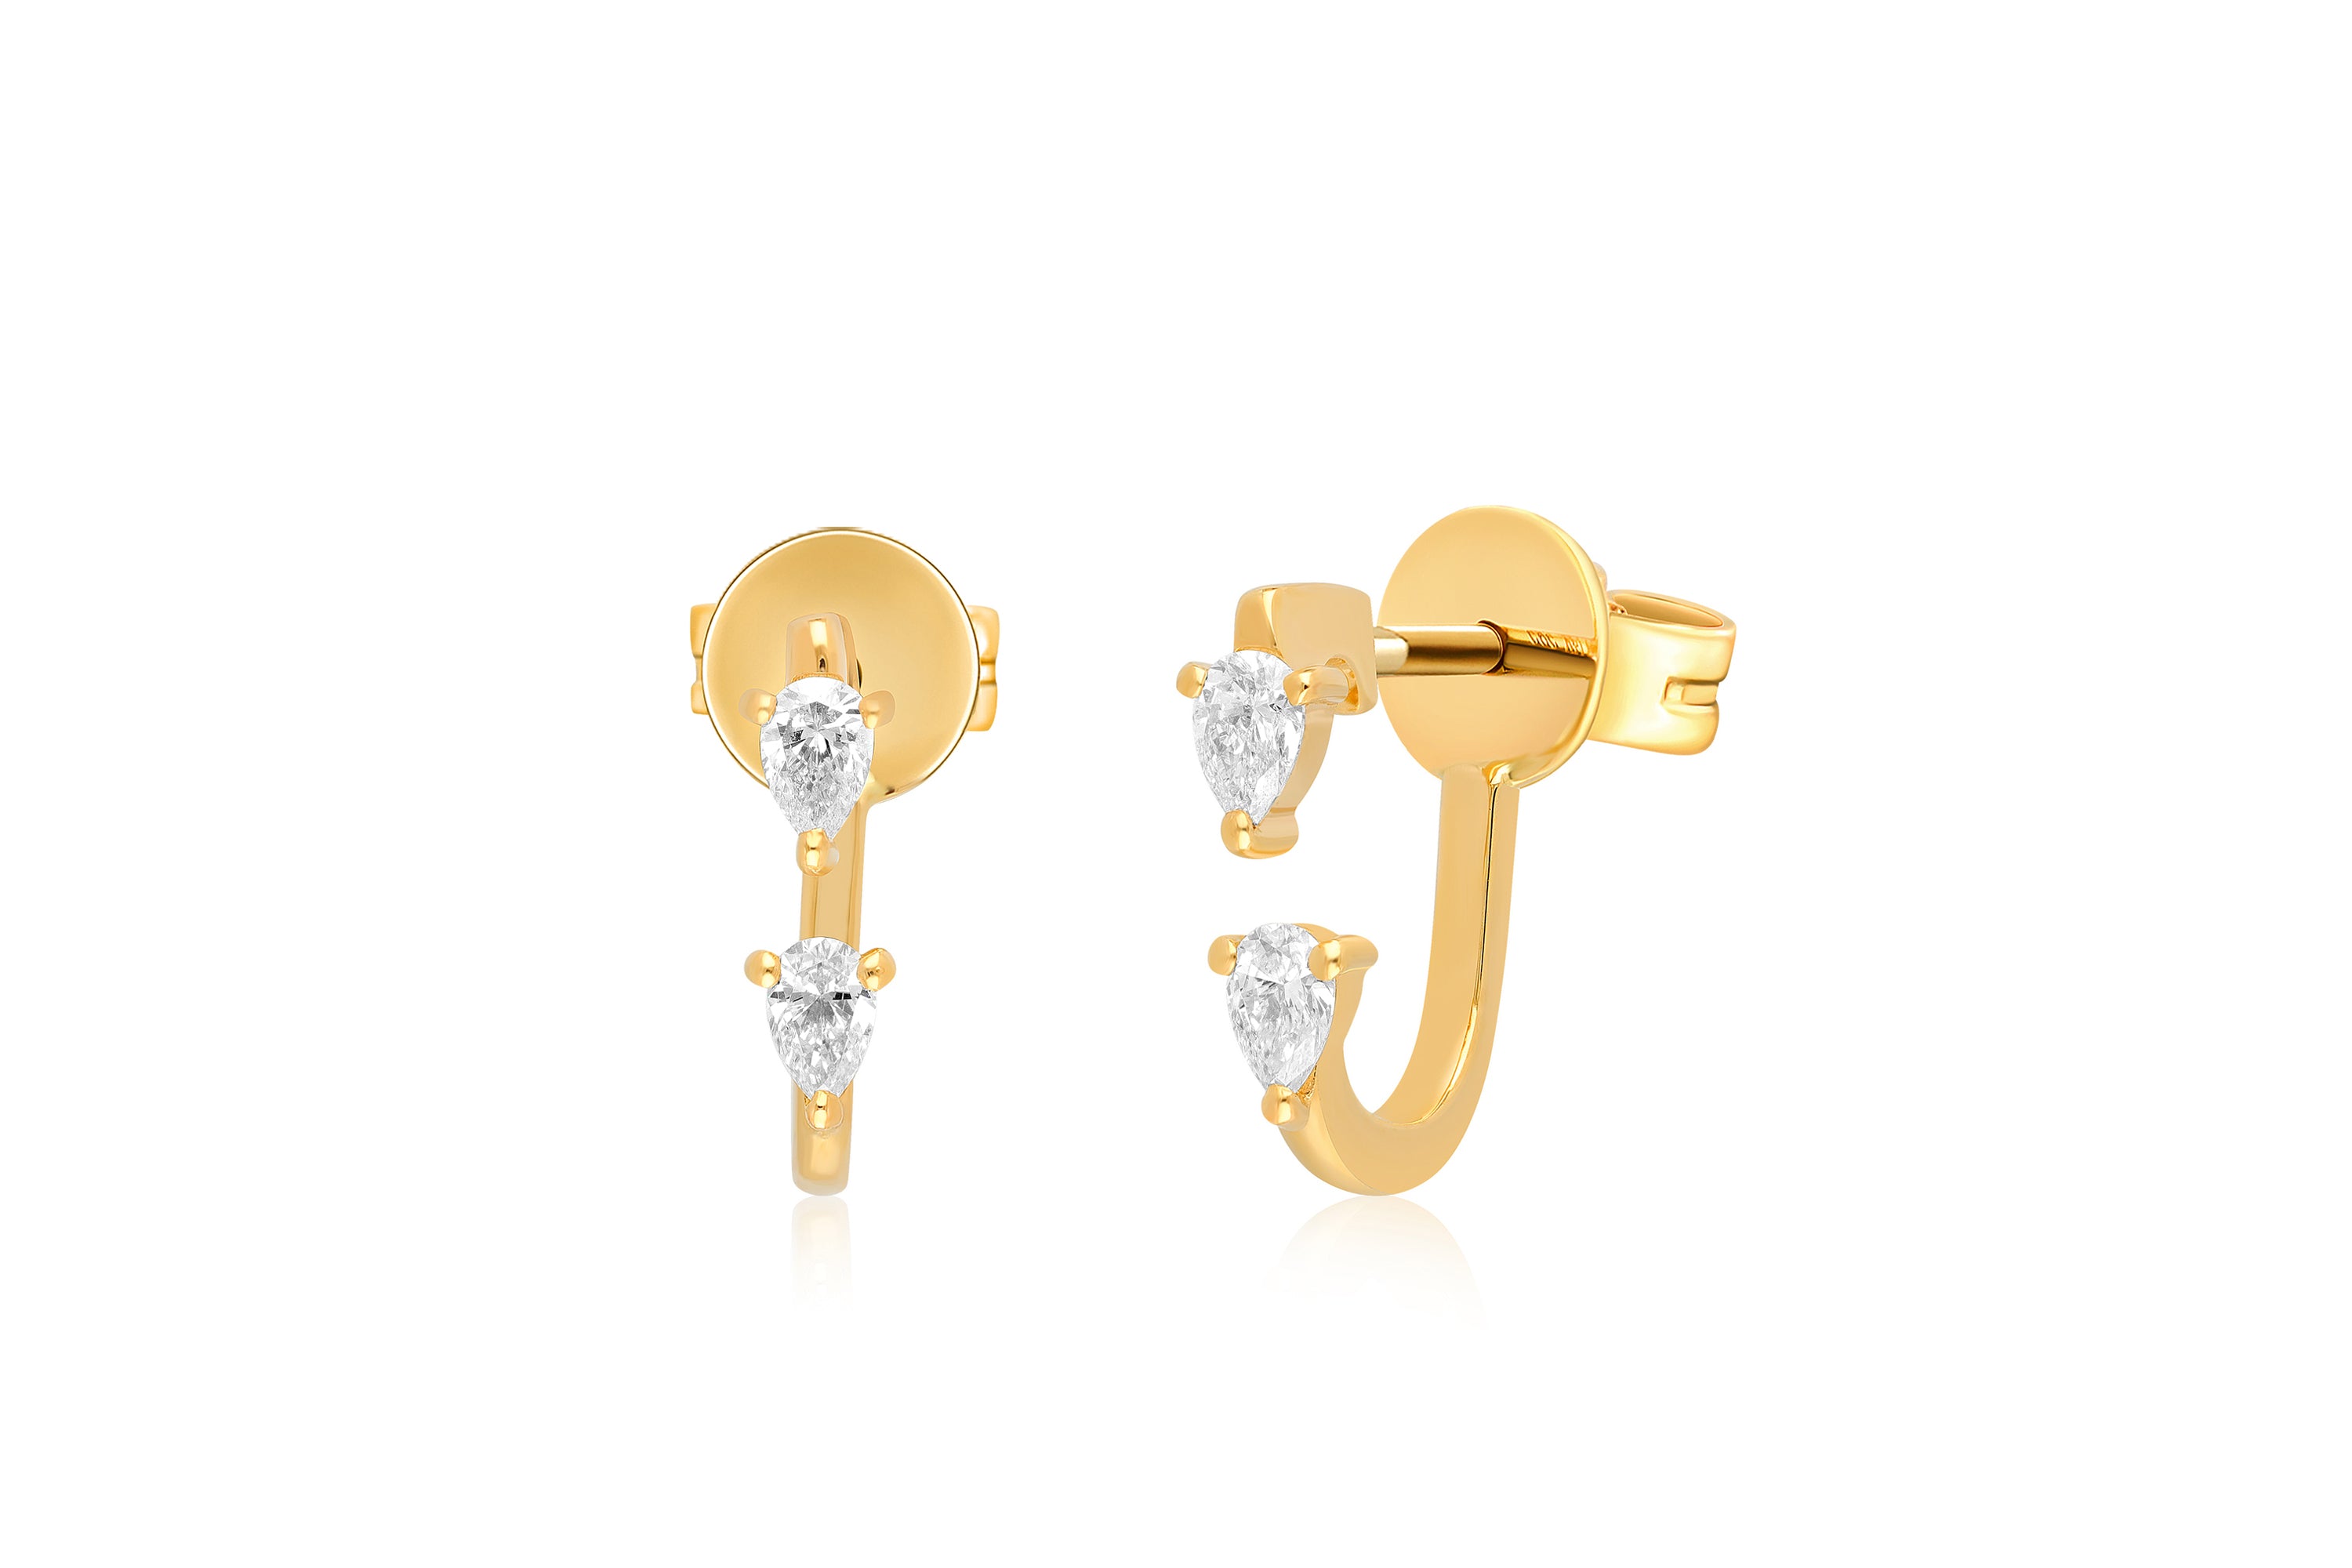 Double Pear Diamond Earring in 14k Yellow Gold